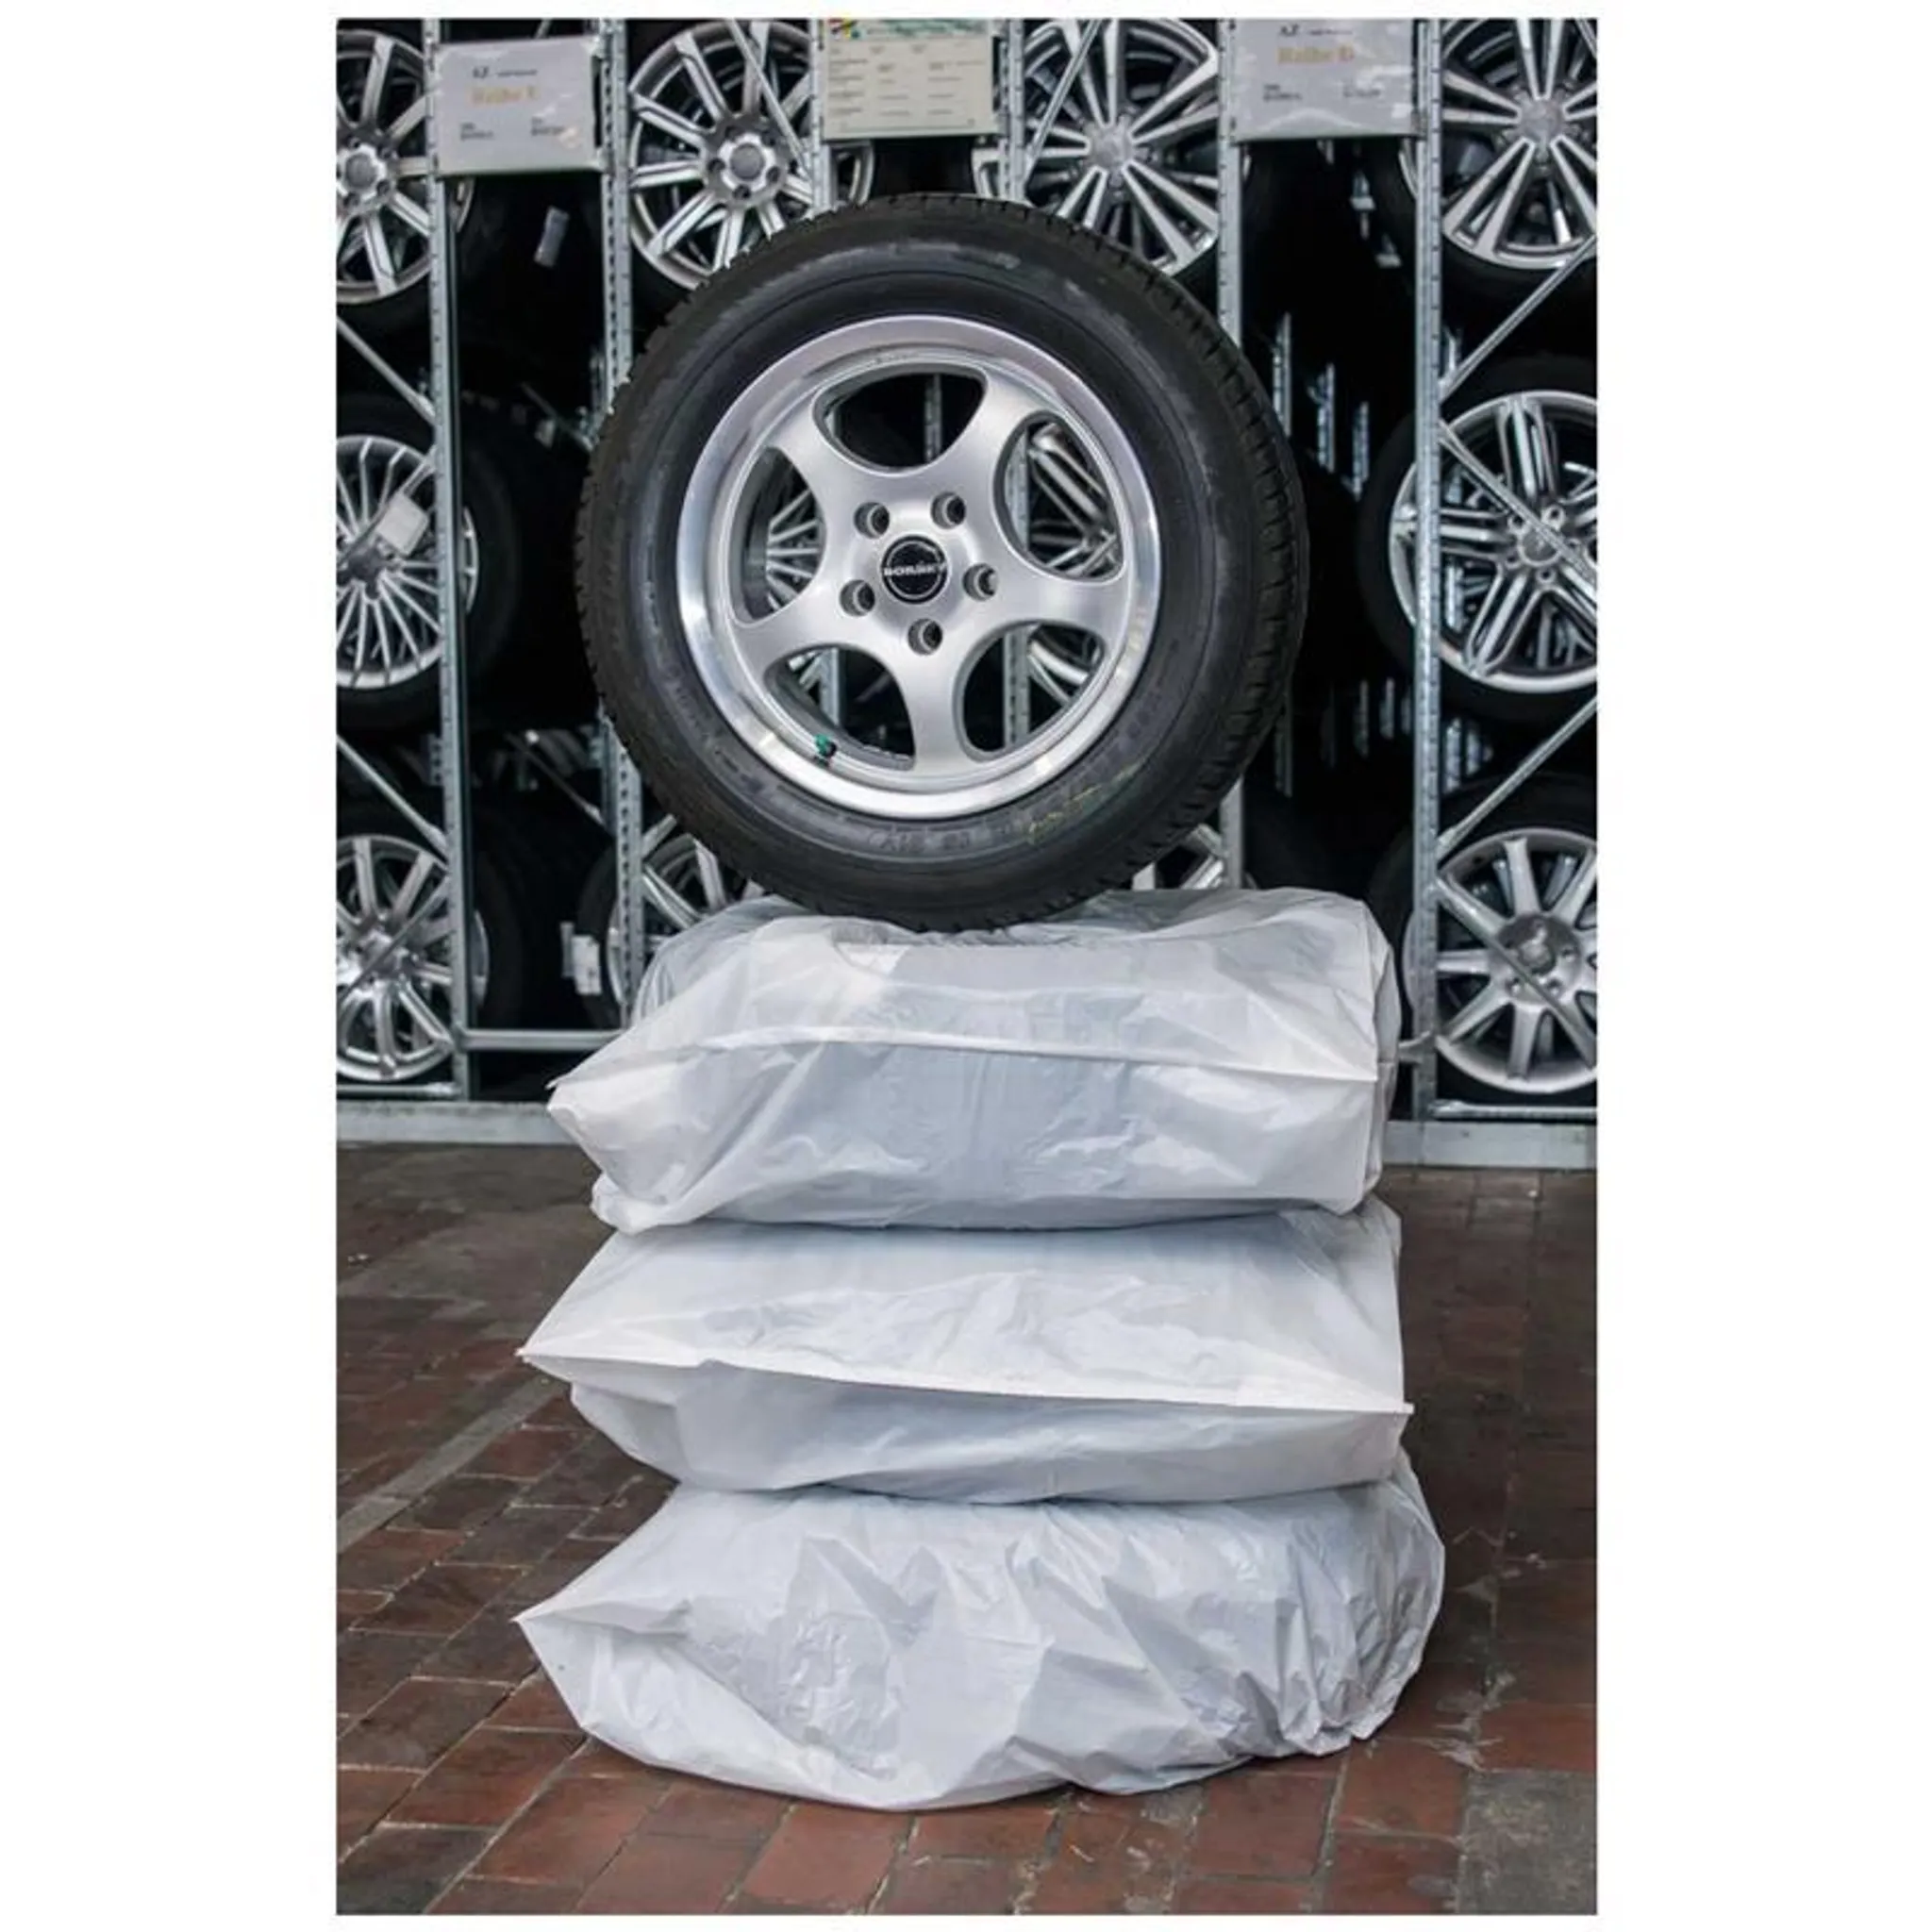 200 Reifensäcke XL Rolle Reifentüten Reifentaschen Reifensäcke Reifentaschen 